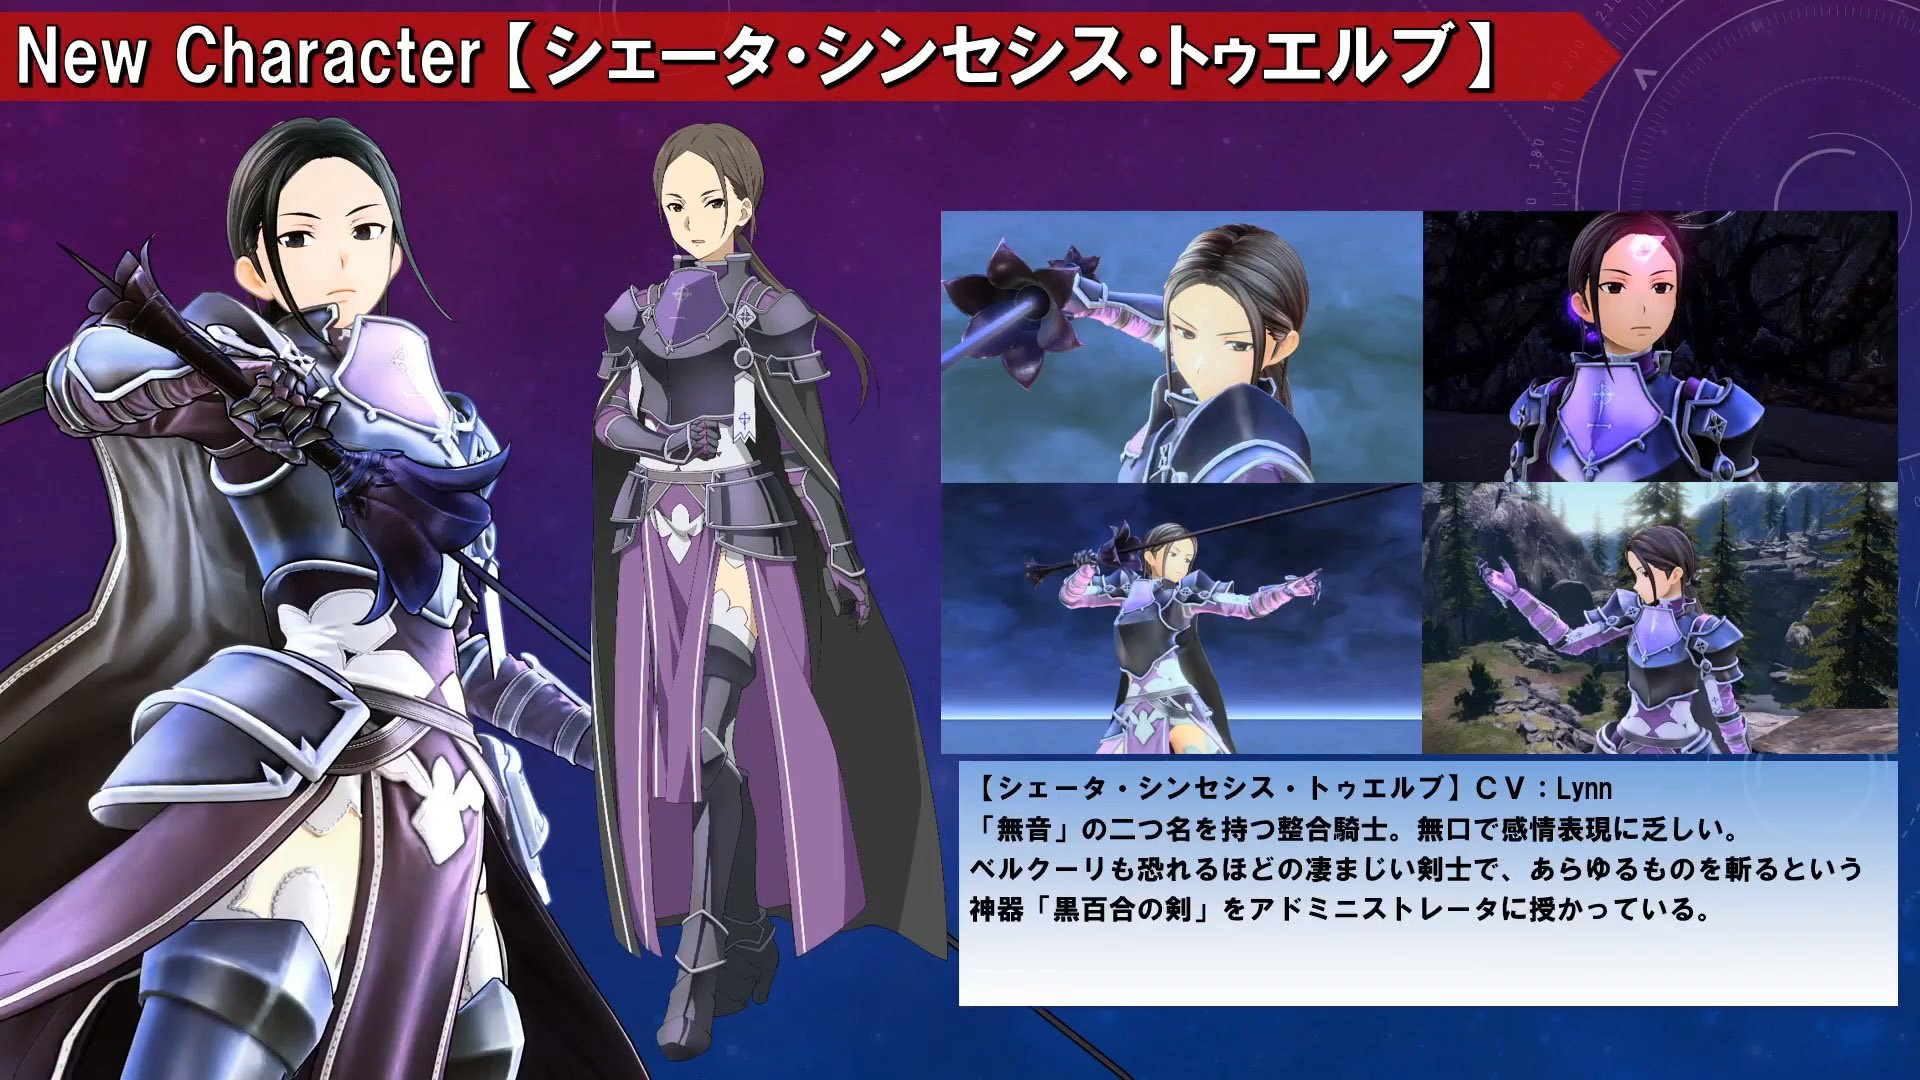 Sword Art Online Figures - Characters & News - Anime Crew